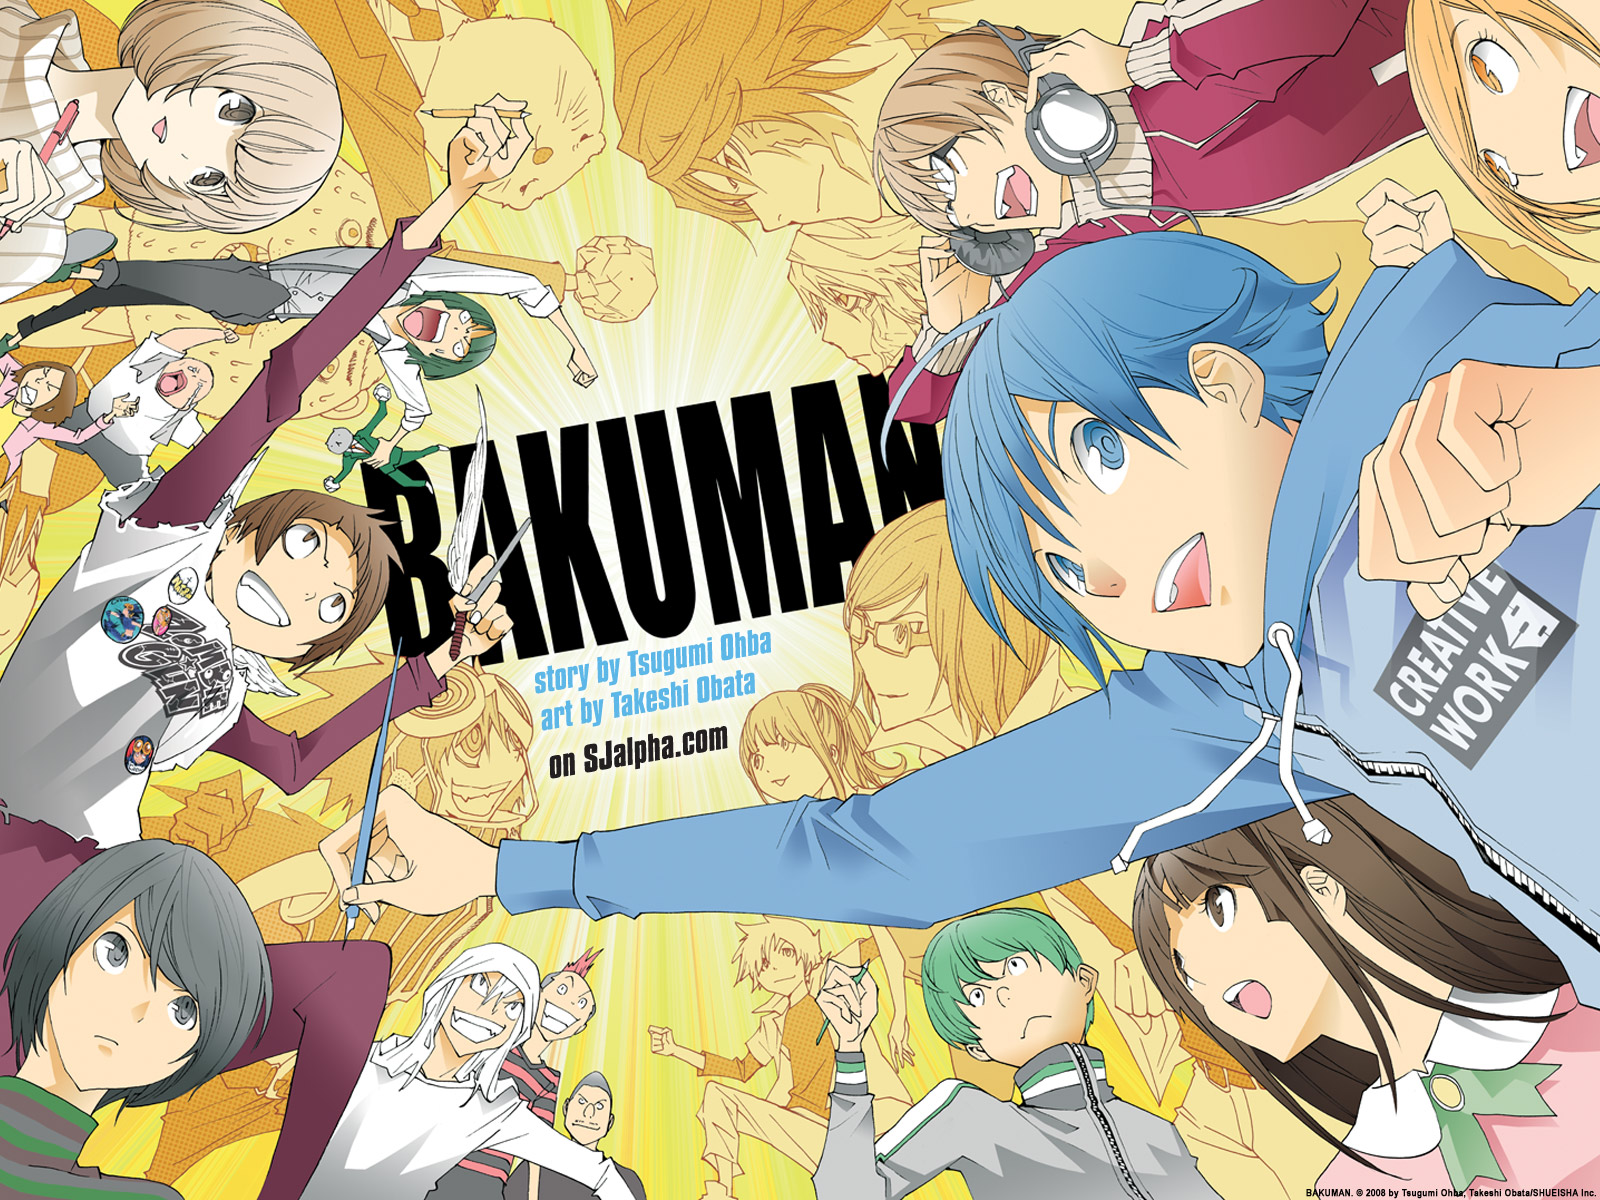 carta da parati bakuman,cartone animato,anime,illustrazione,finzione,cg artwork